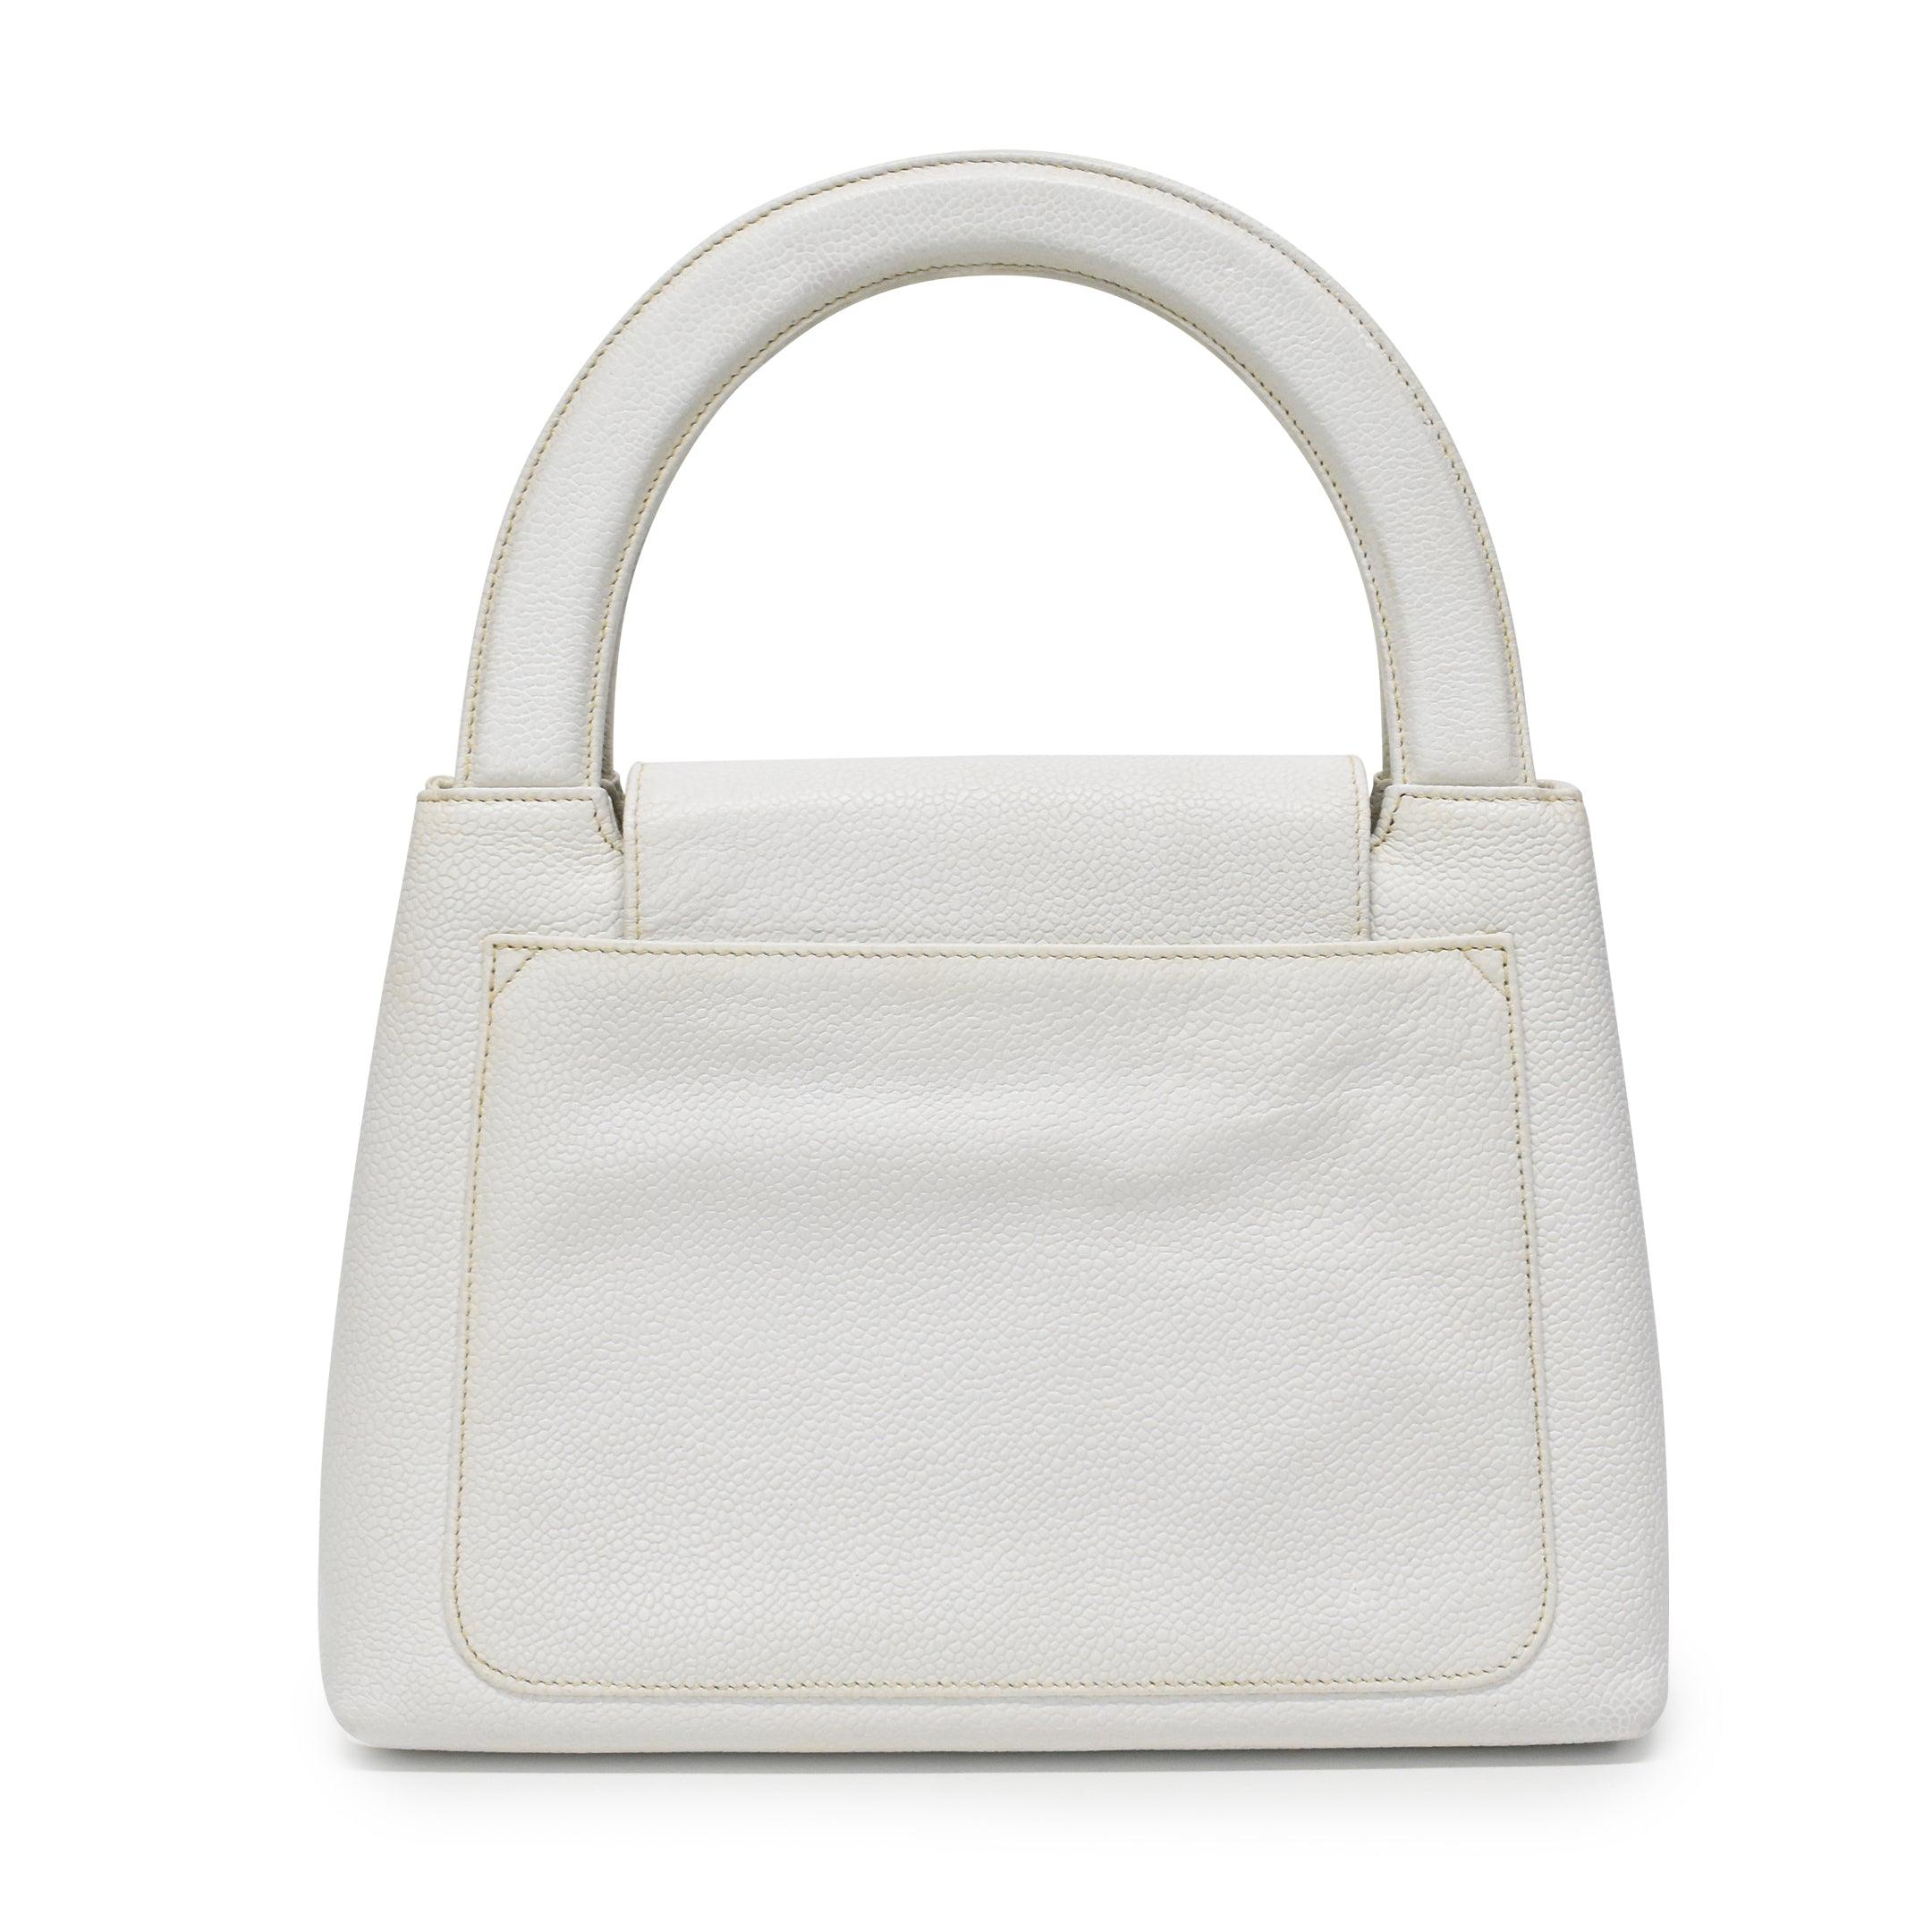 Chanel 'Kelly' Handbag - Fashionably Yours